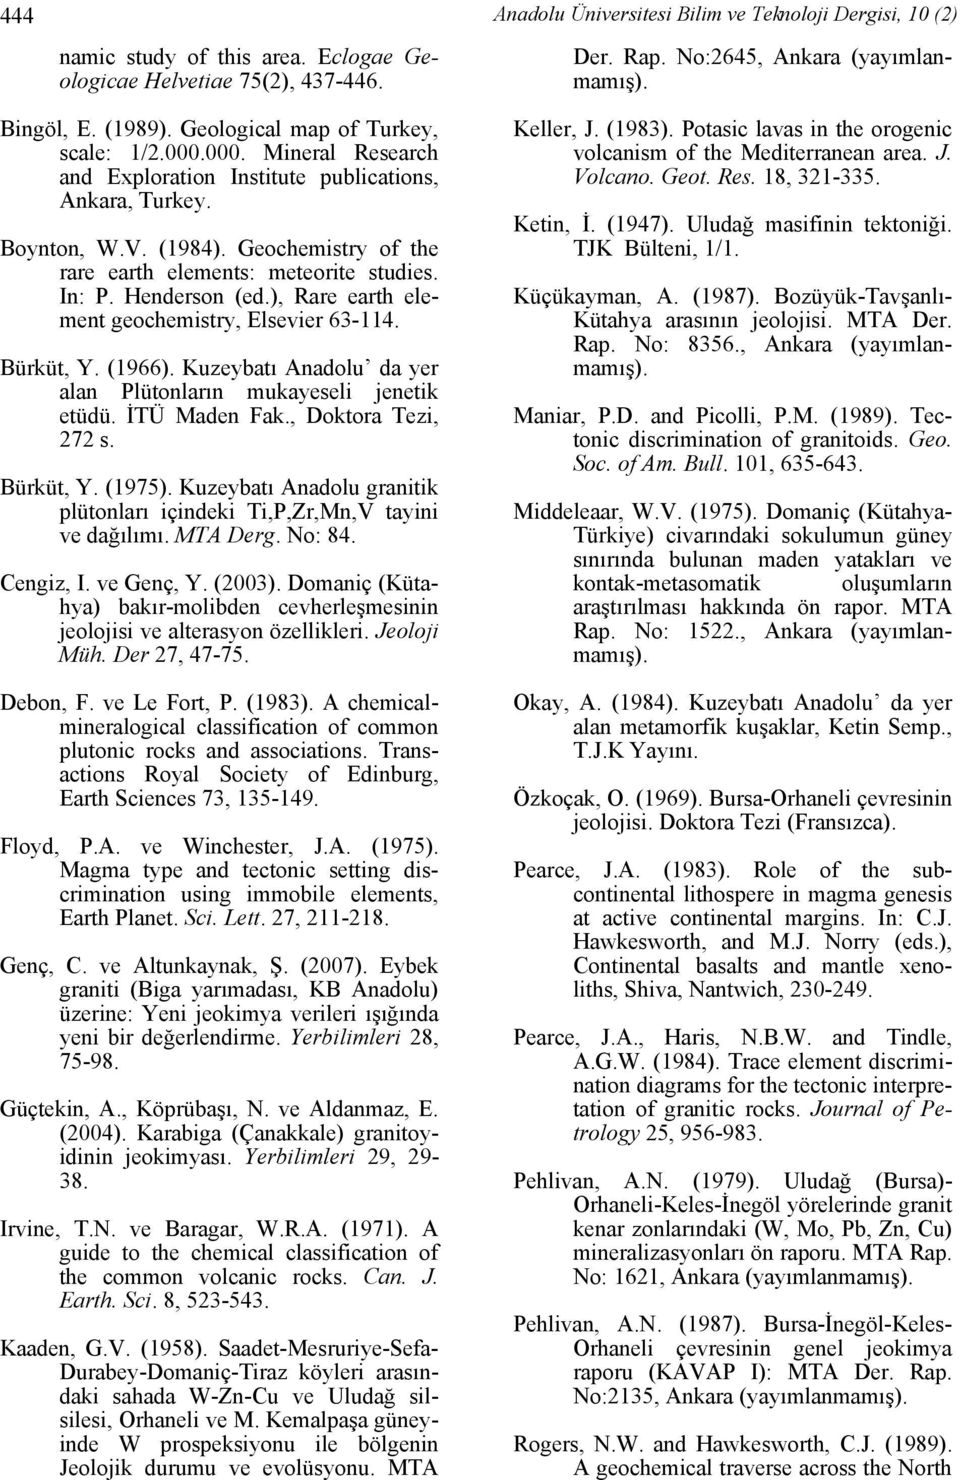 Henderson (ed.), Rare earth element geochemistry, Elsevier 63-4. Bürküt, Y. (966). Kuzeybatı Anadolu da yer alan Plütonların mukayeseli jenetik etüdü. İTÜ Maden Fak., Doktora Tezi, 272 s. Bürküt, Y. (975).